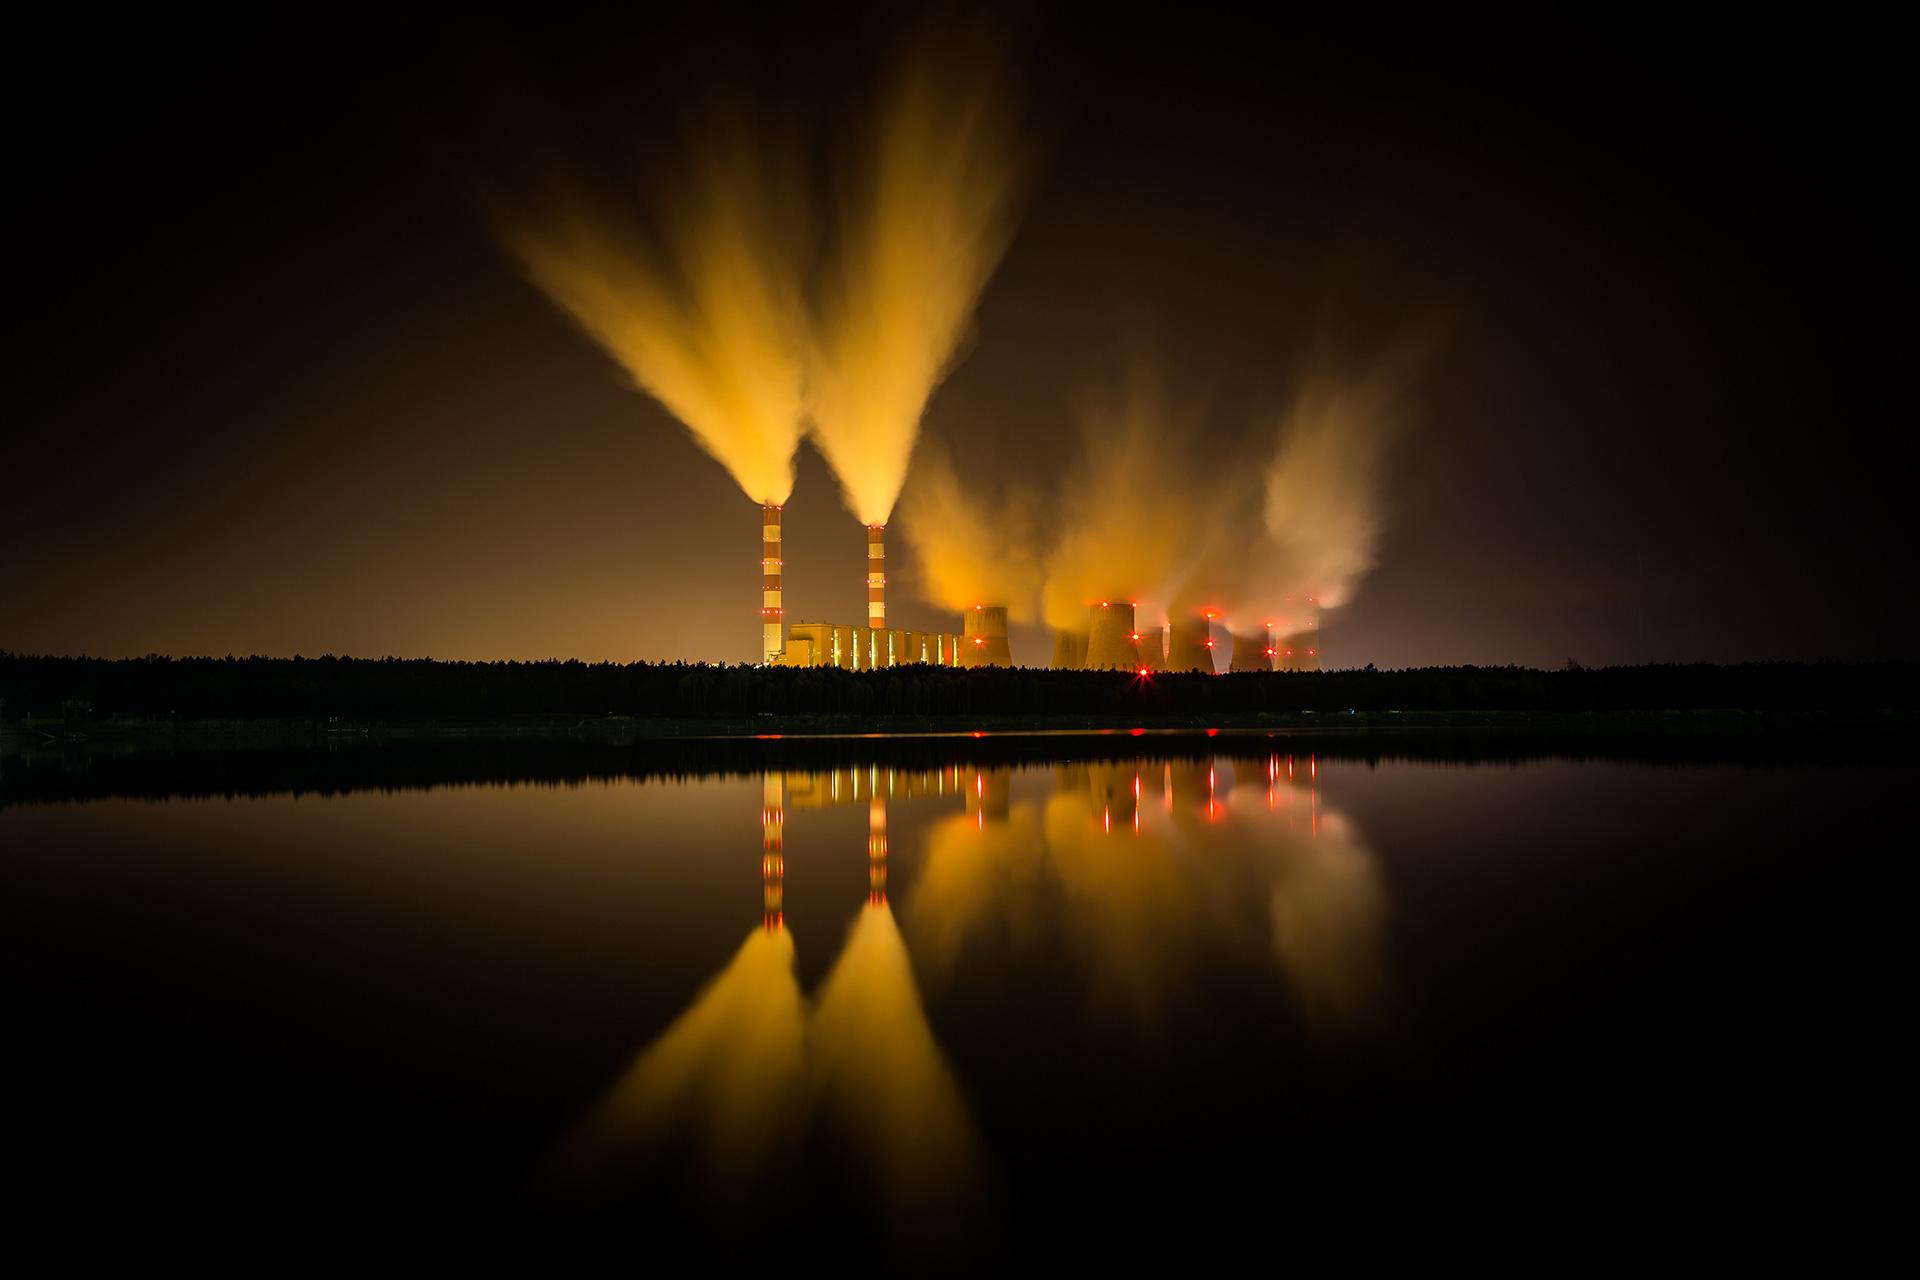 Vue des émissions de vapeur d'une centrale nucléaire, Pologne